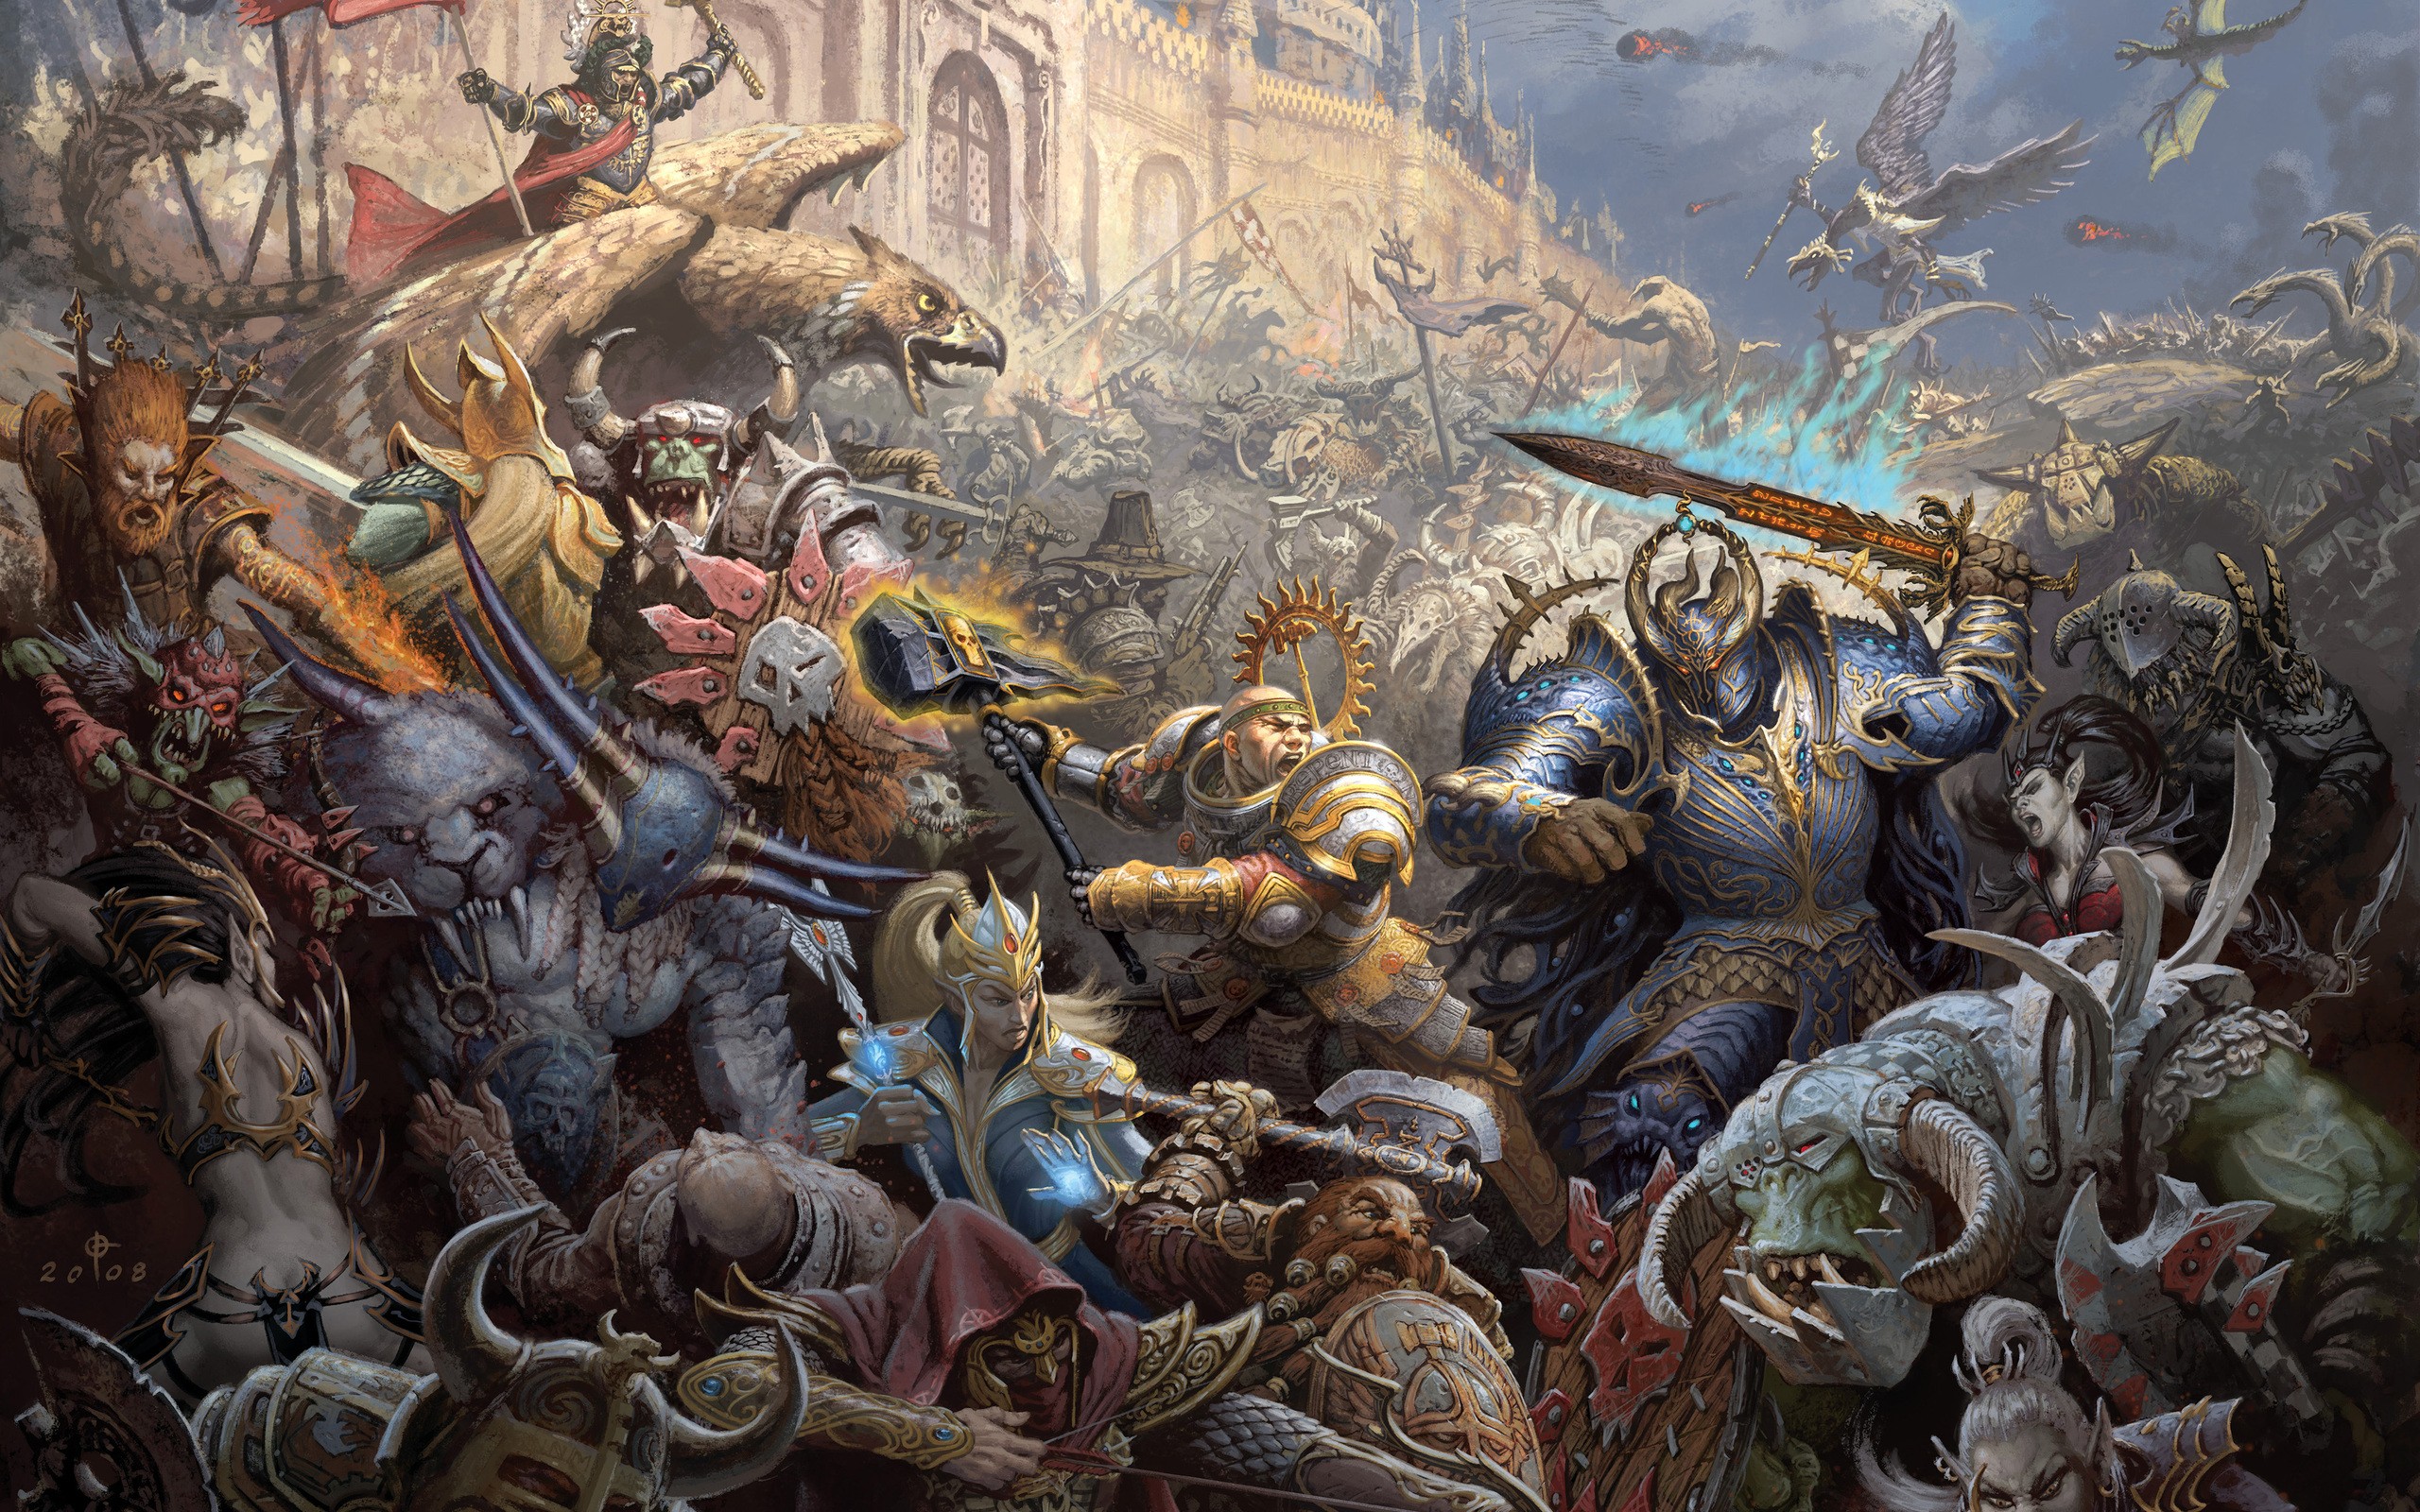 fantasy, Mage, War, Castles, Warhammer, Chaos, Elves, Dwarfs, Battles, Orcs, Artwork, Siege Wallpaper